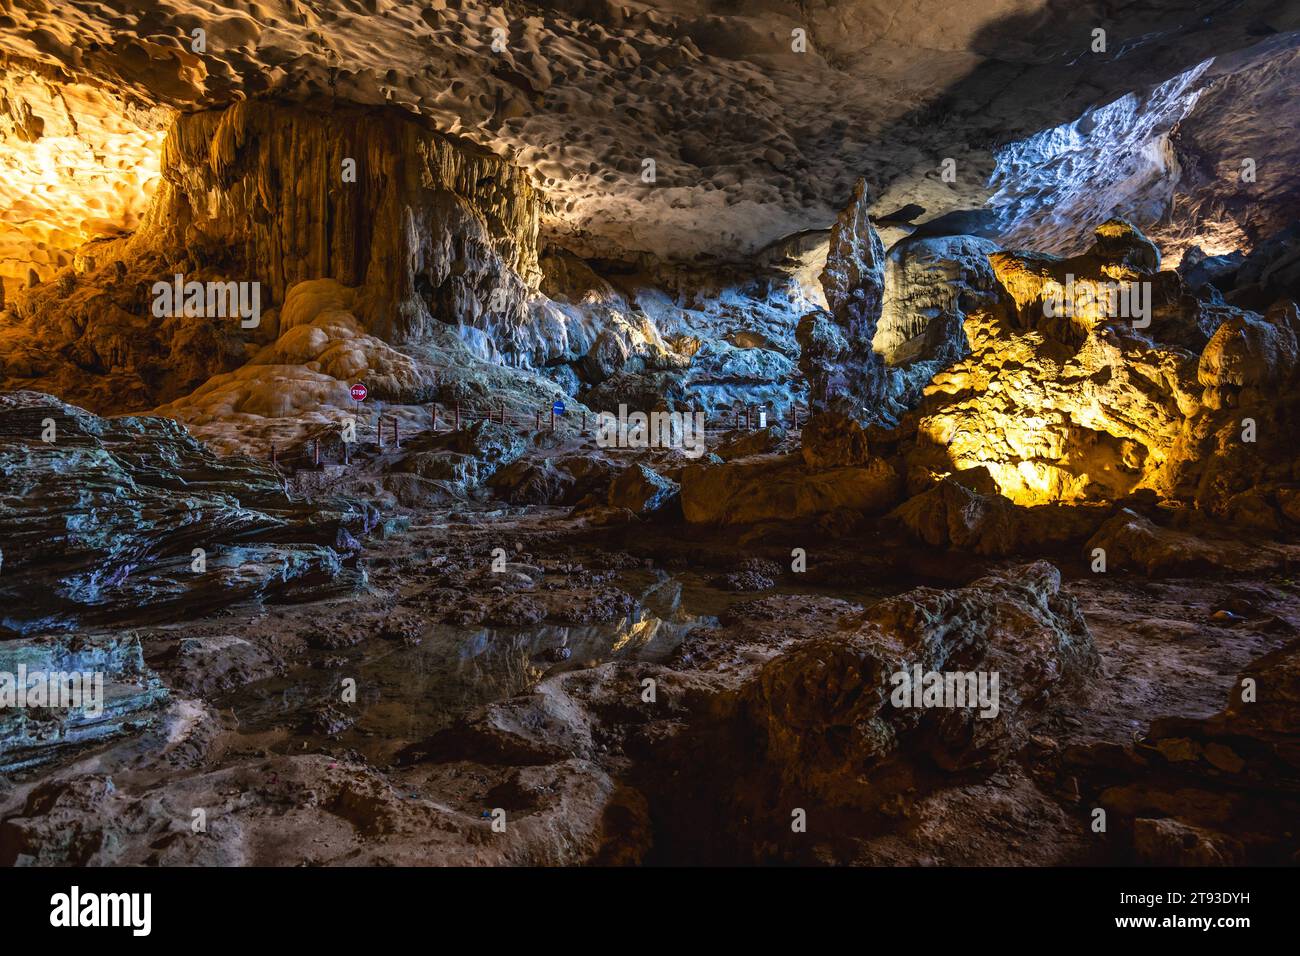 Surprise Cave, nota anche come Sung Sot Cave, situata nella baia di ha long, vietnam Foto Stock